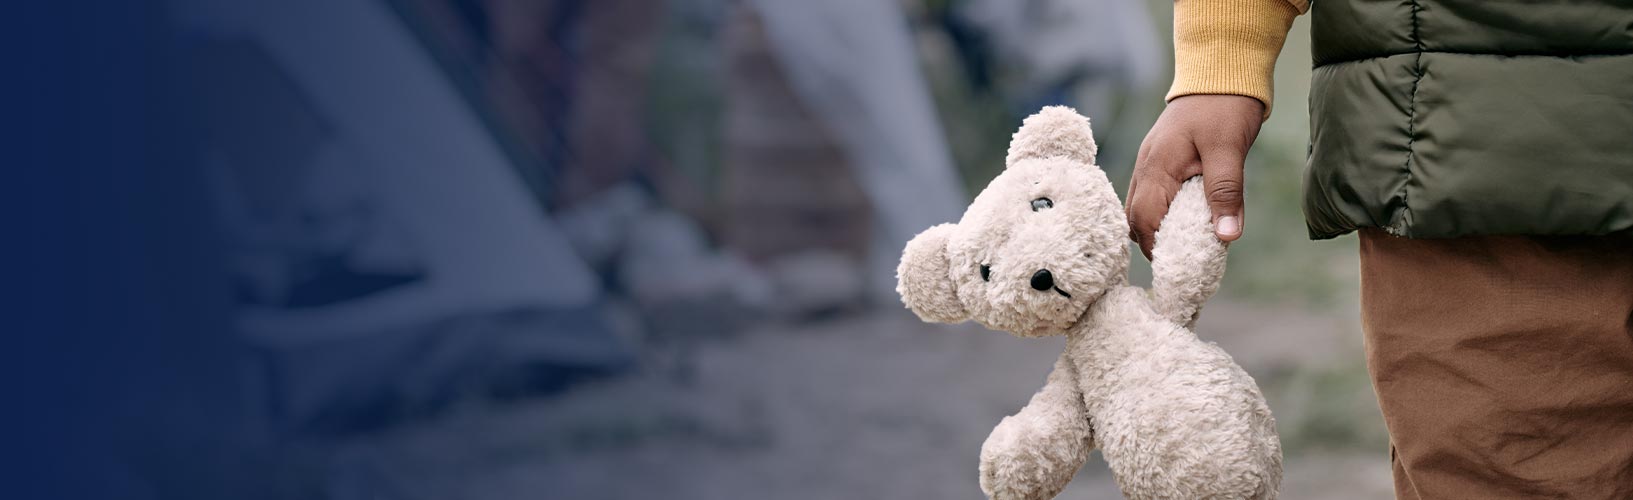 Homeless child holding white teddy bear